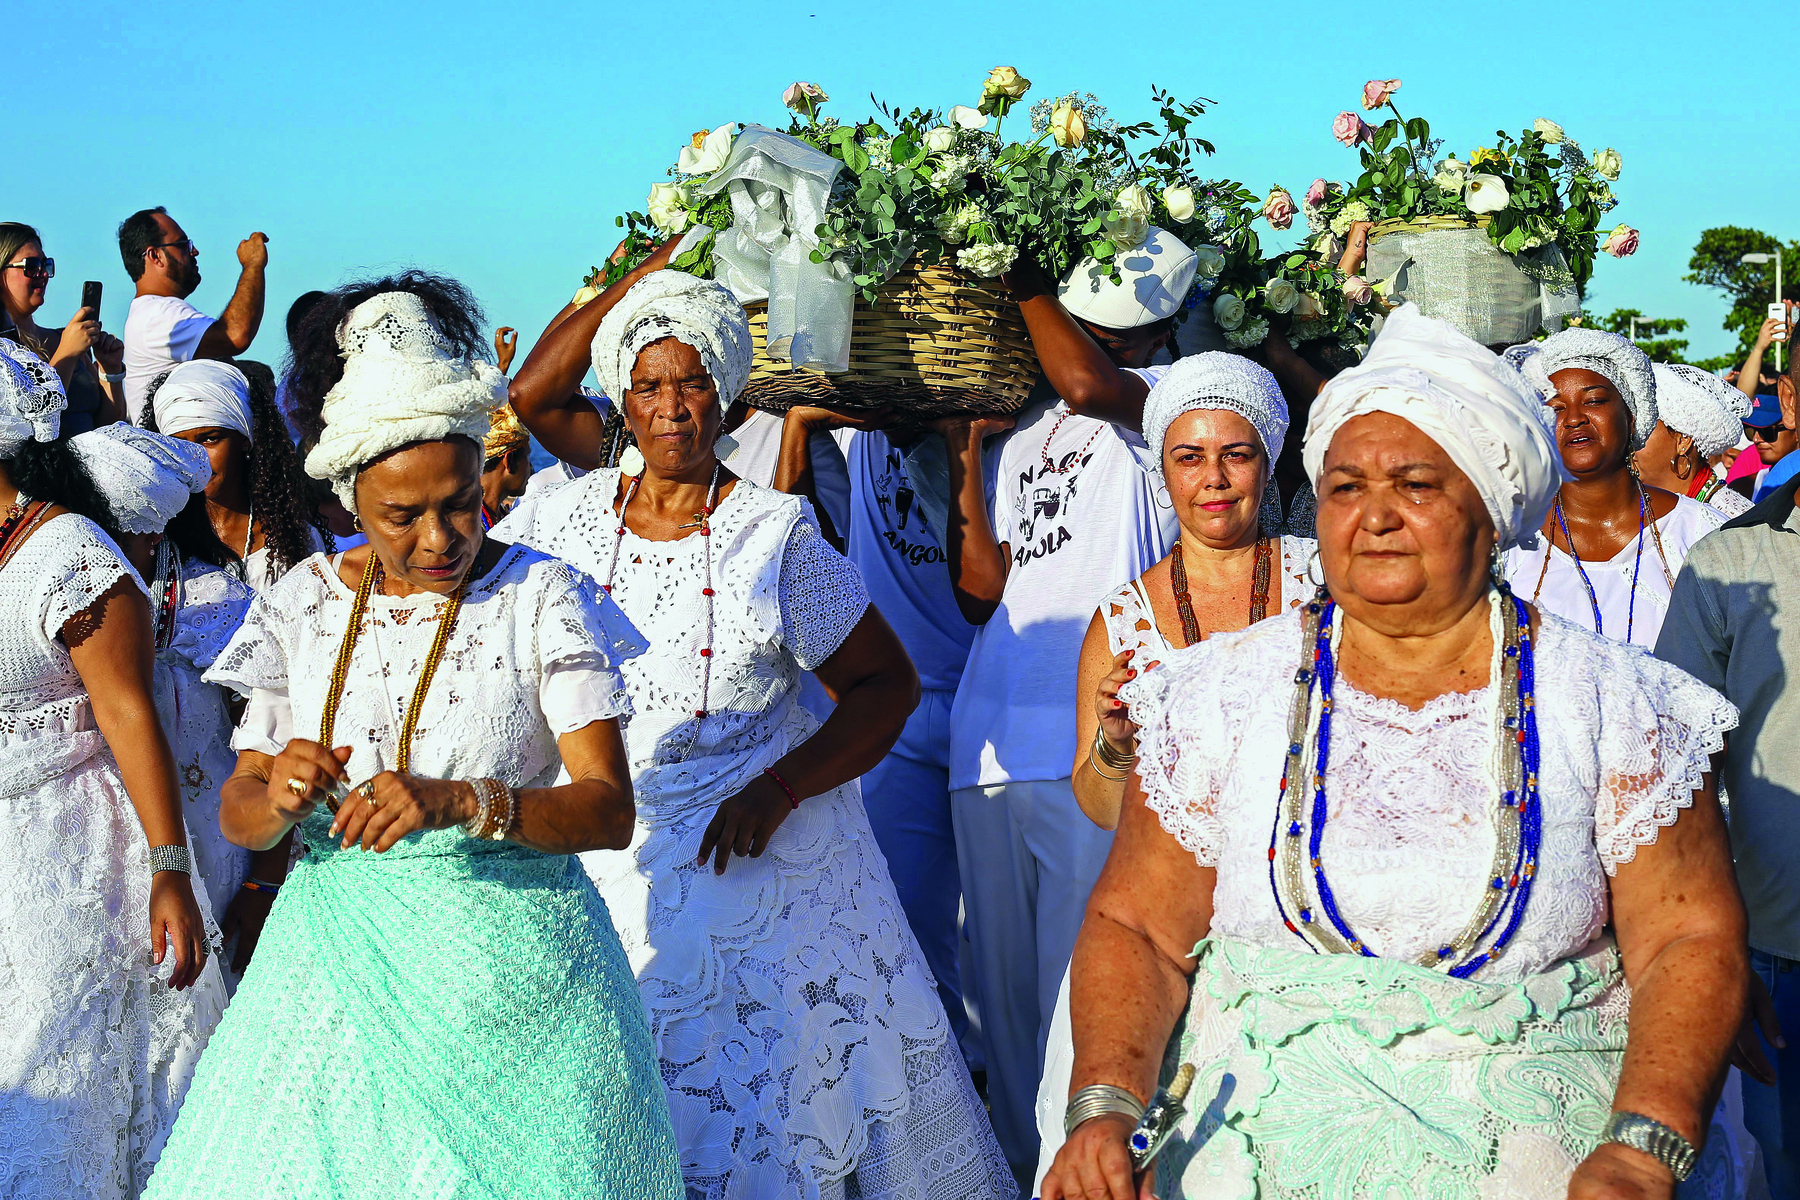 Fotografia. Em primeiro plano, um conjunto de mulheres lado a lado, trajando vestidos brancos, turbantes de mesma cor ao redor de suas cabeças e colares de cores diferentes. Ao centro, destaque para algumas pessoas carregando cestas com rosas brancas.